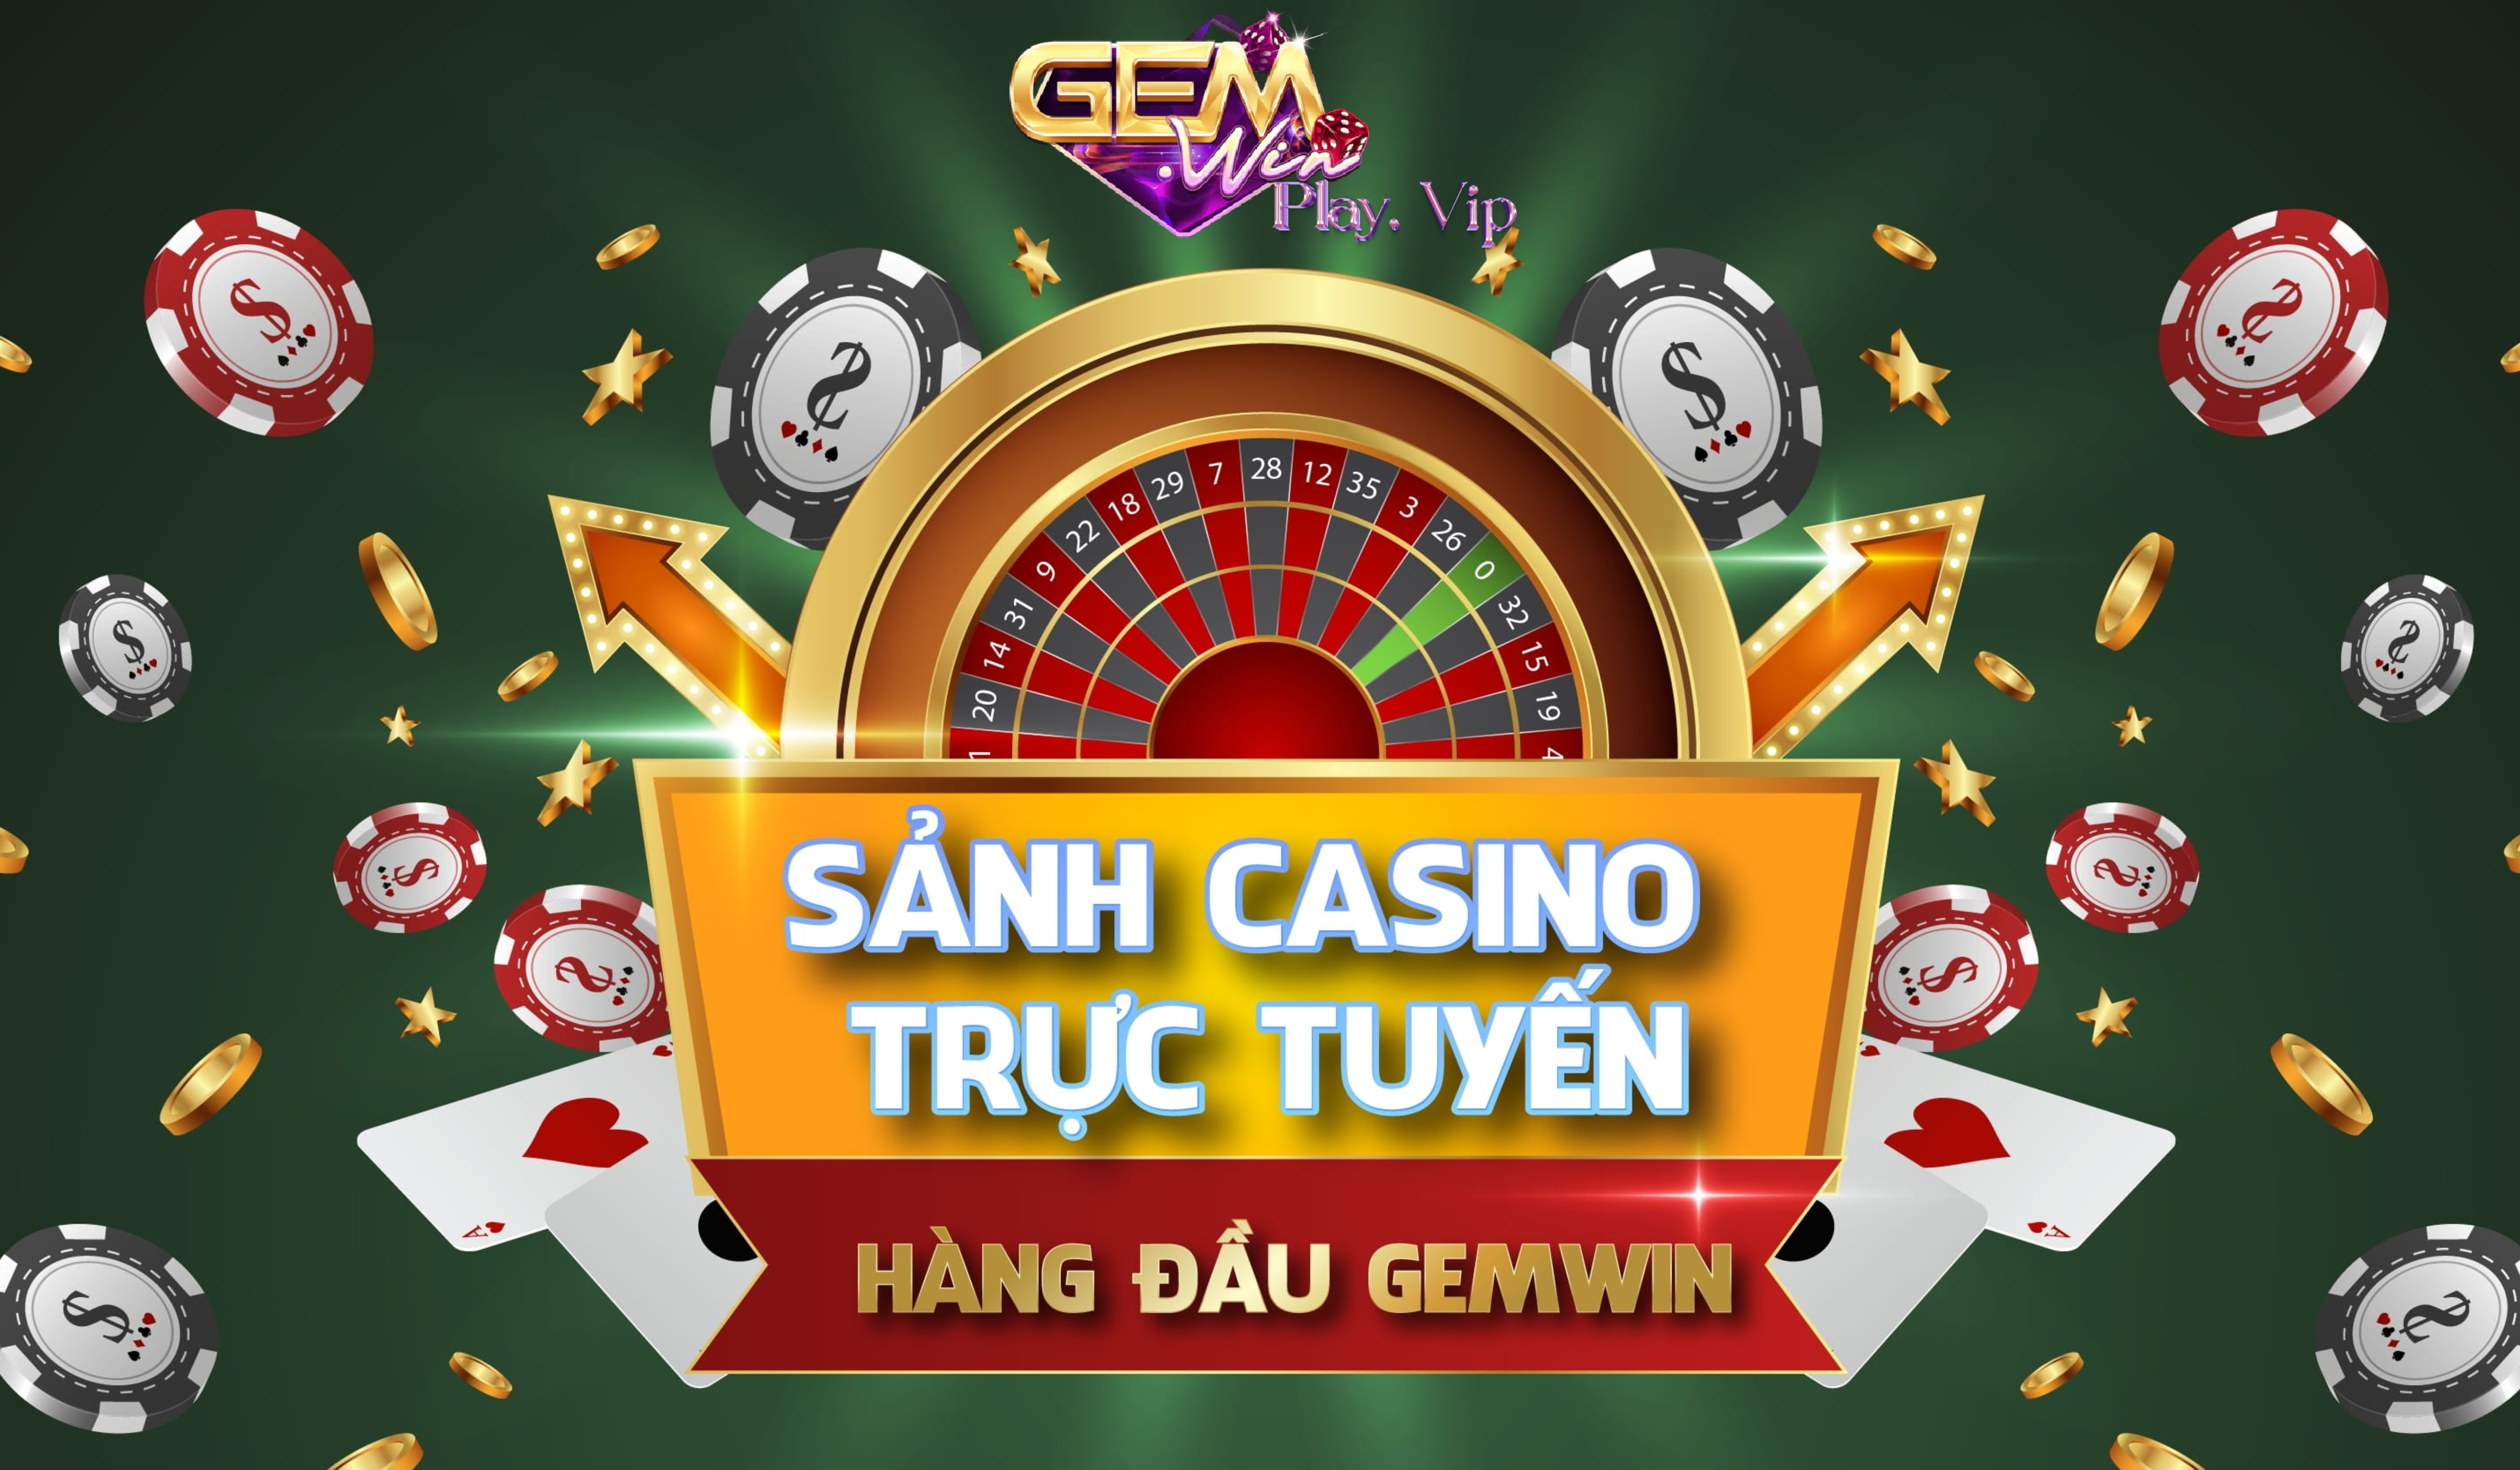 Sảnh Casino trực tuyến hàng đầu tại Gemwin